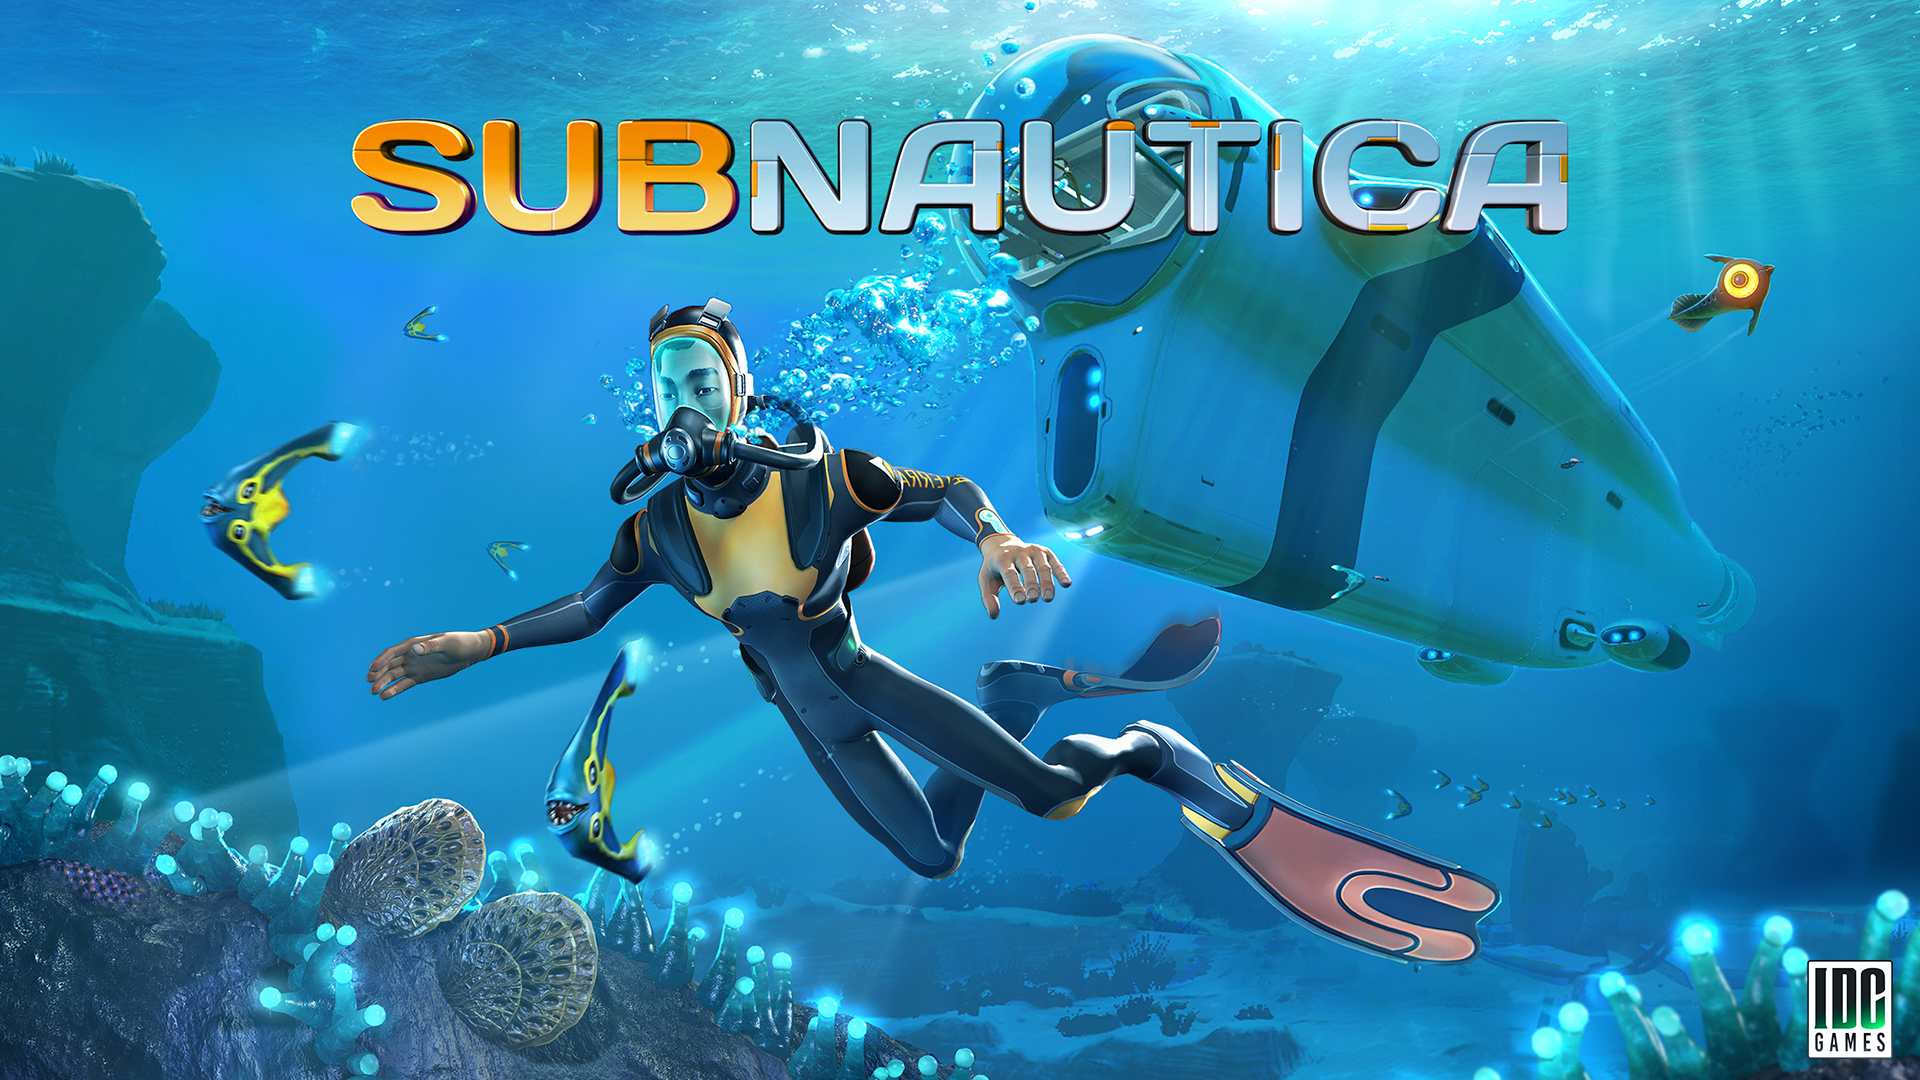 Odkrywanie głębi: Analiza techniczna gry Subnautica